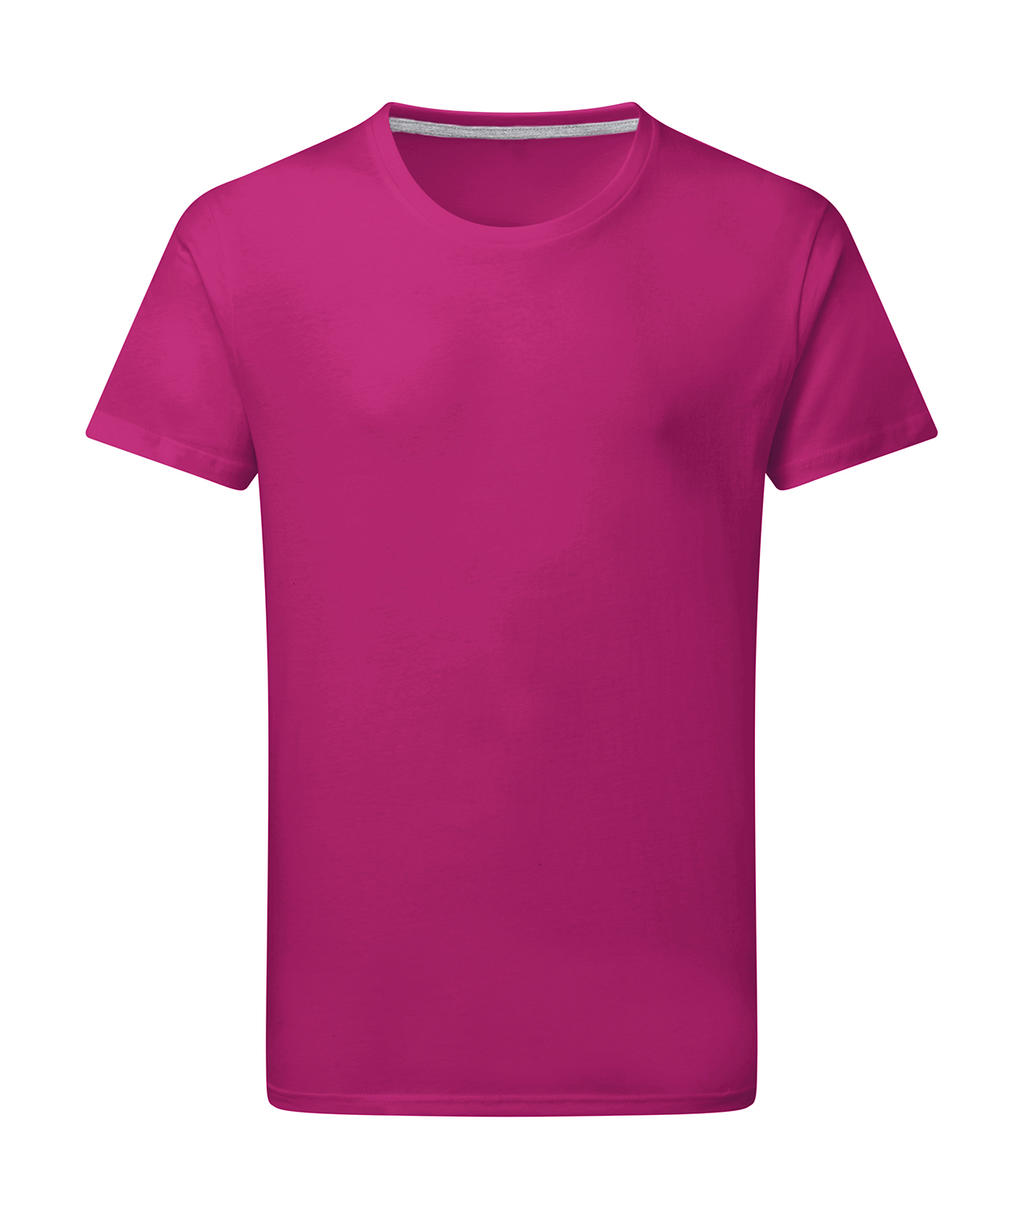 Dokonale potlačiteľné tričko bez štítku - dark pink